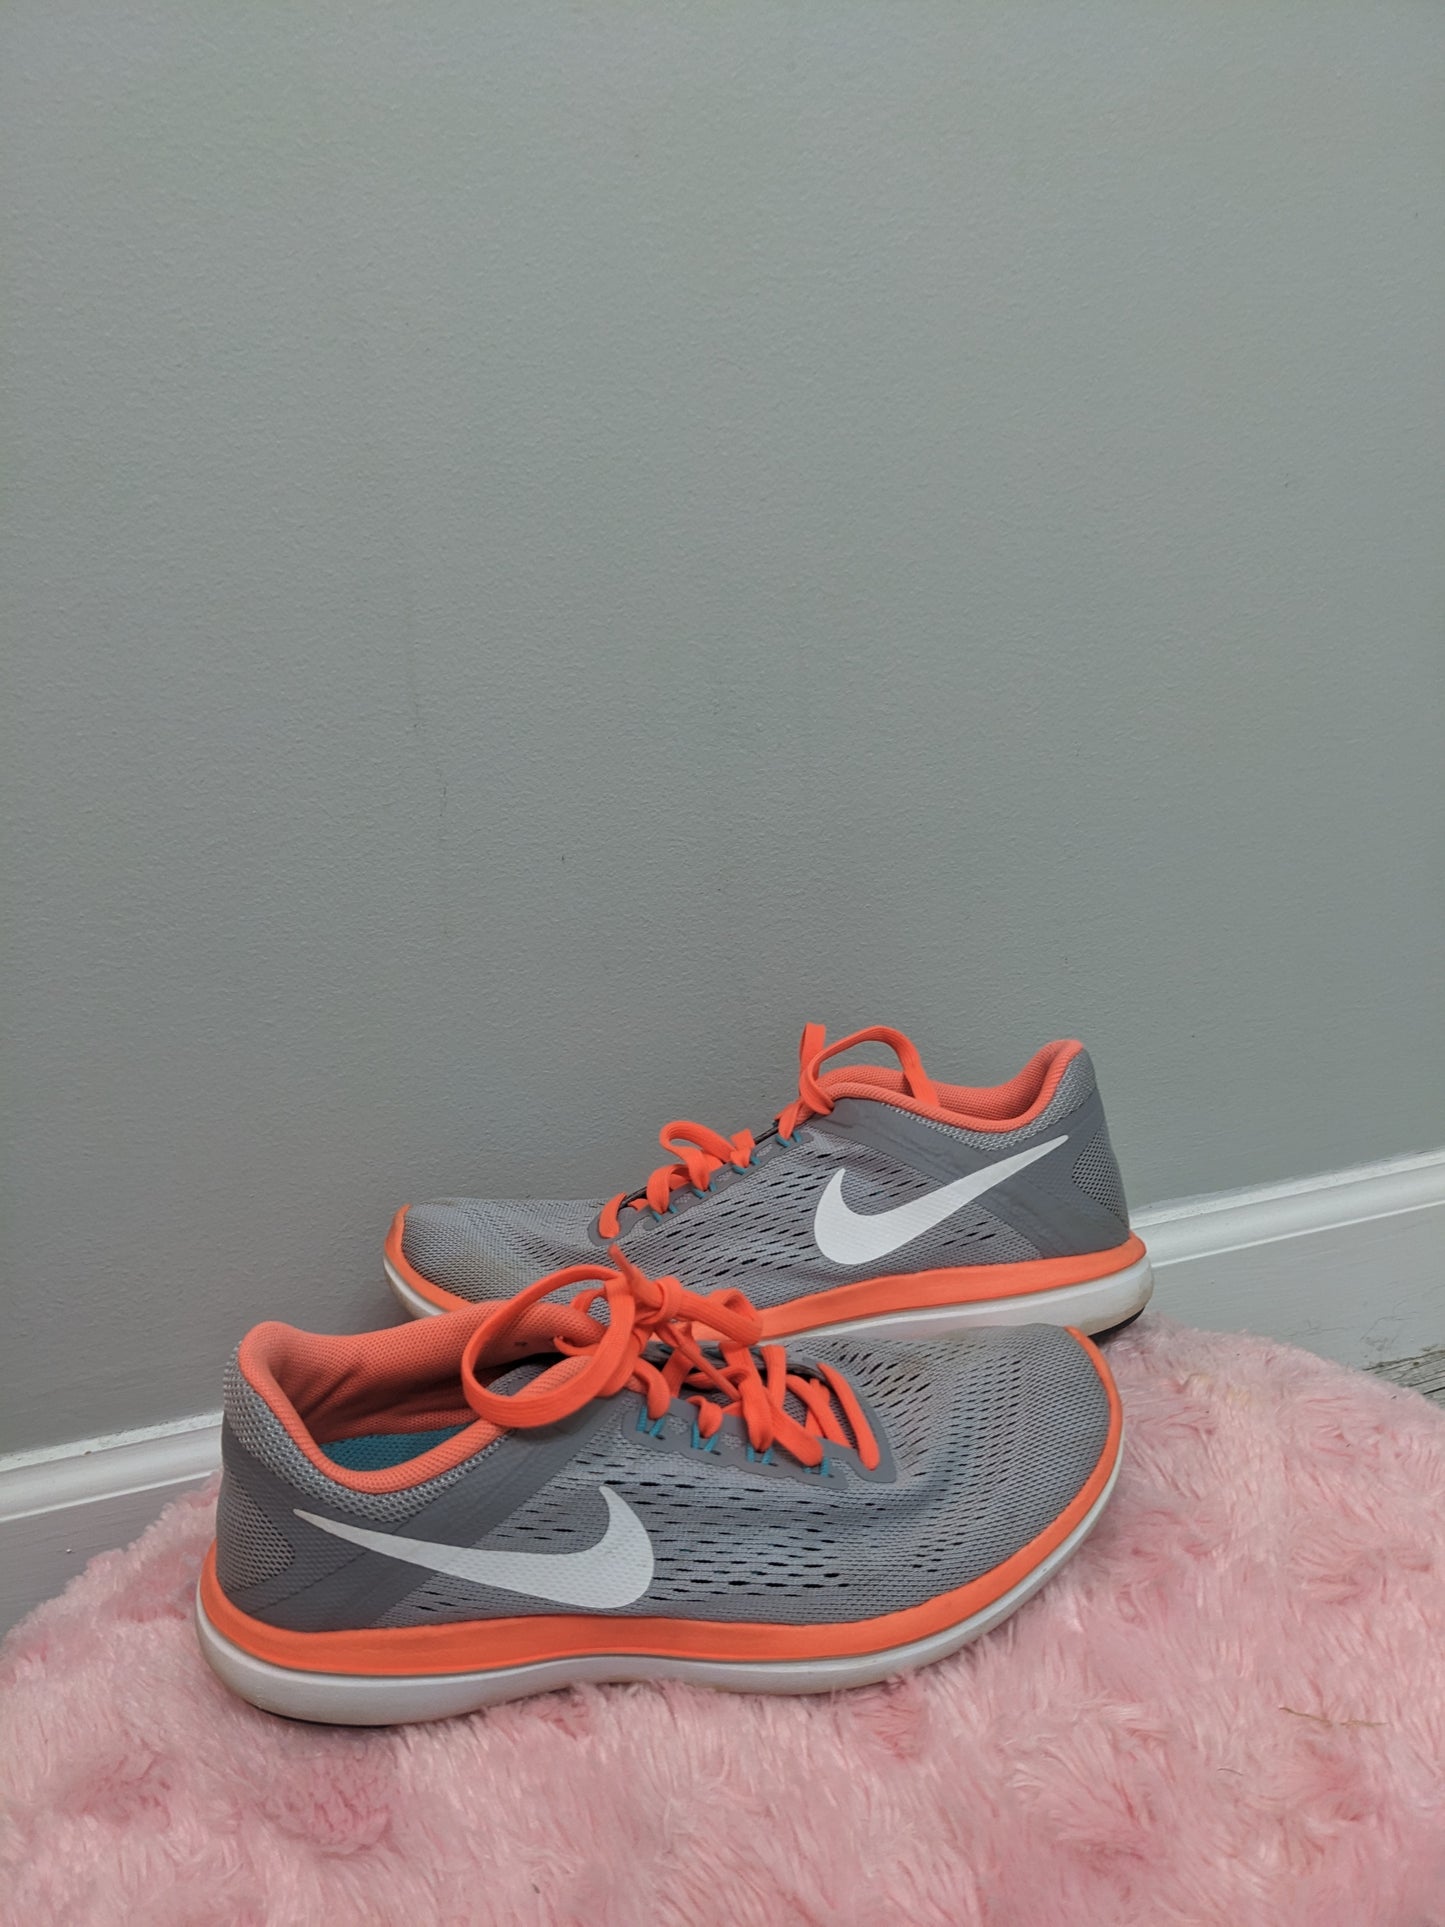 Orange and white Nike size 6c